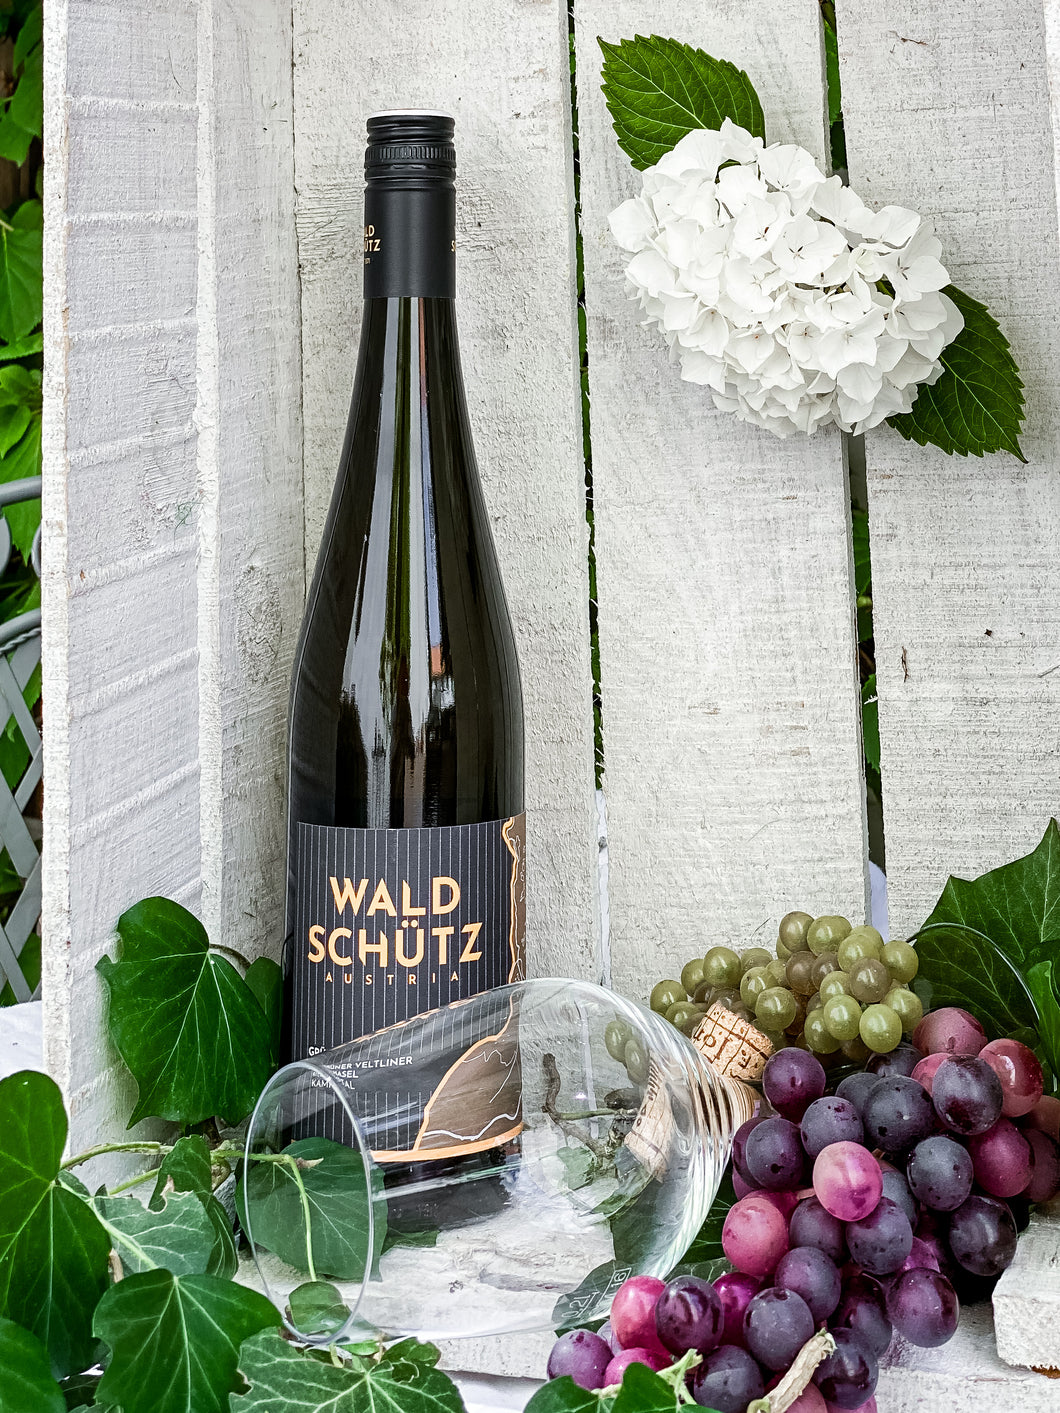 Waldschütz Austria Ried Hasel Grüner Veltliner - Weißwein